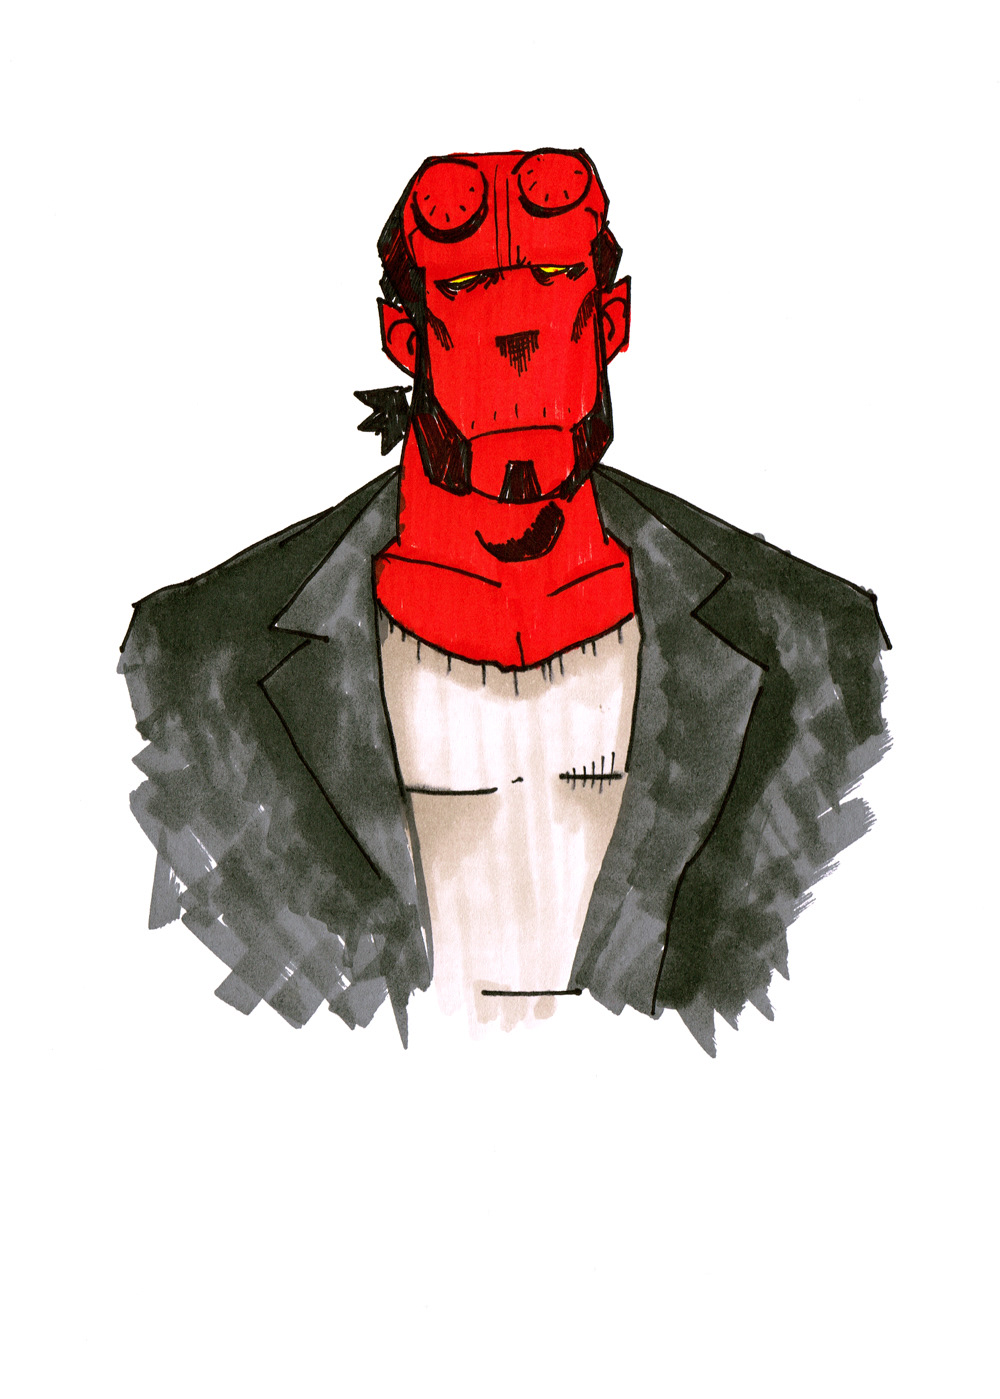 Hellboy comics mike mignola